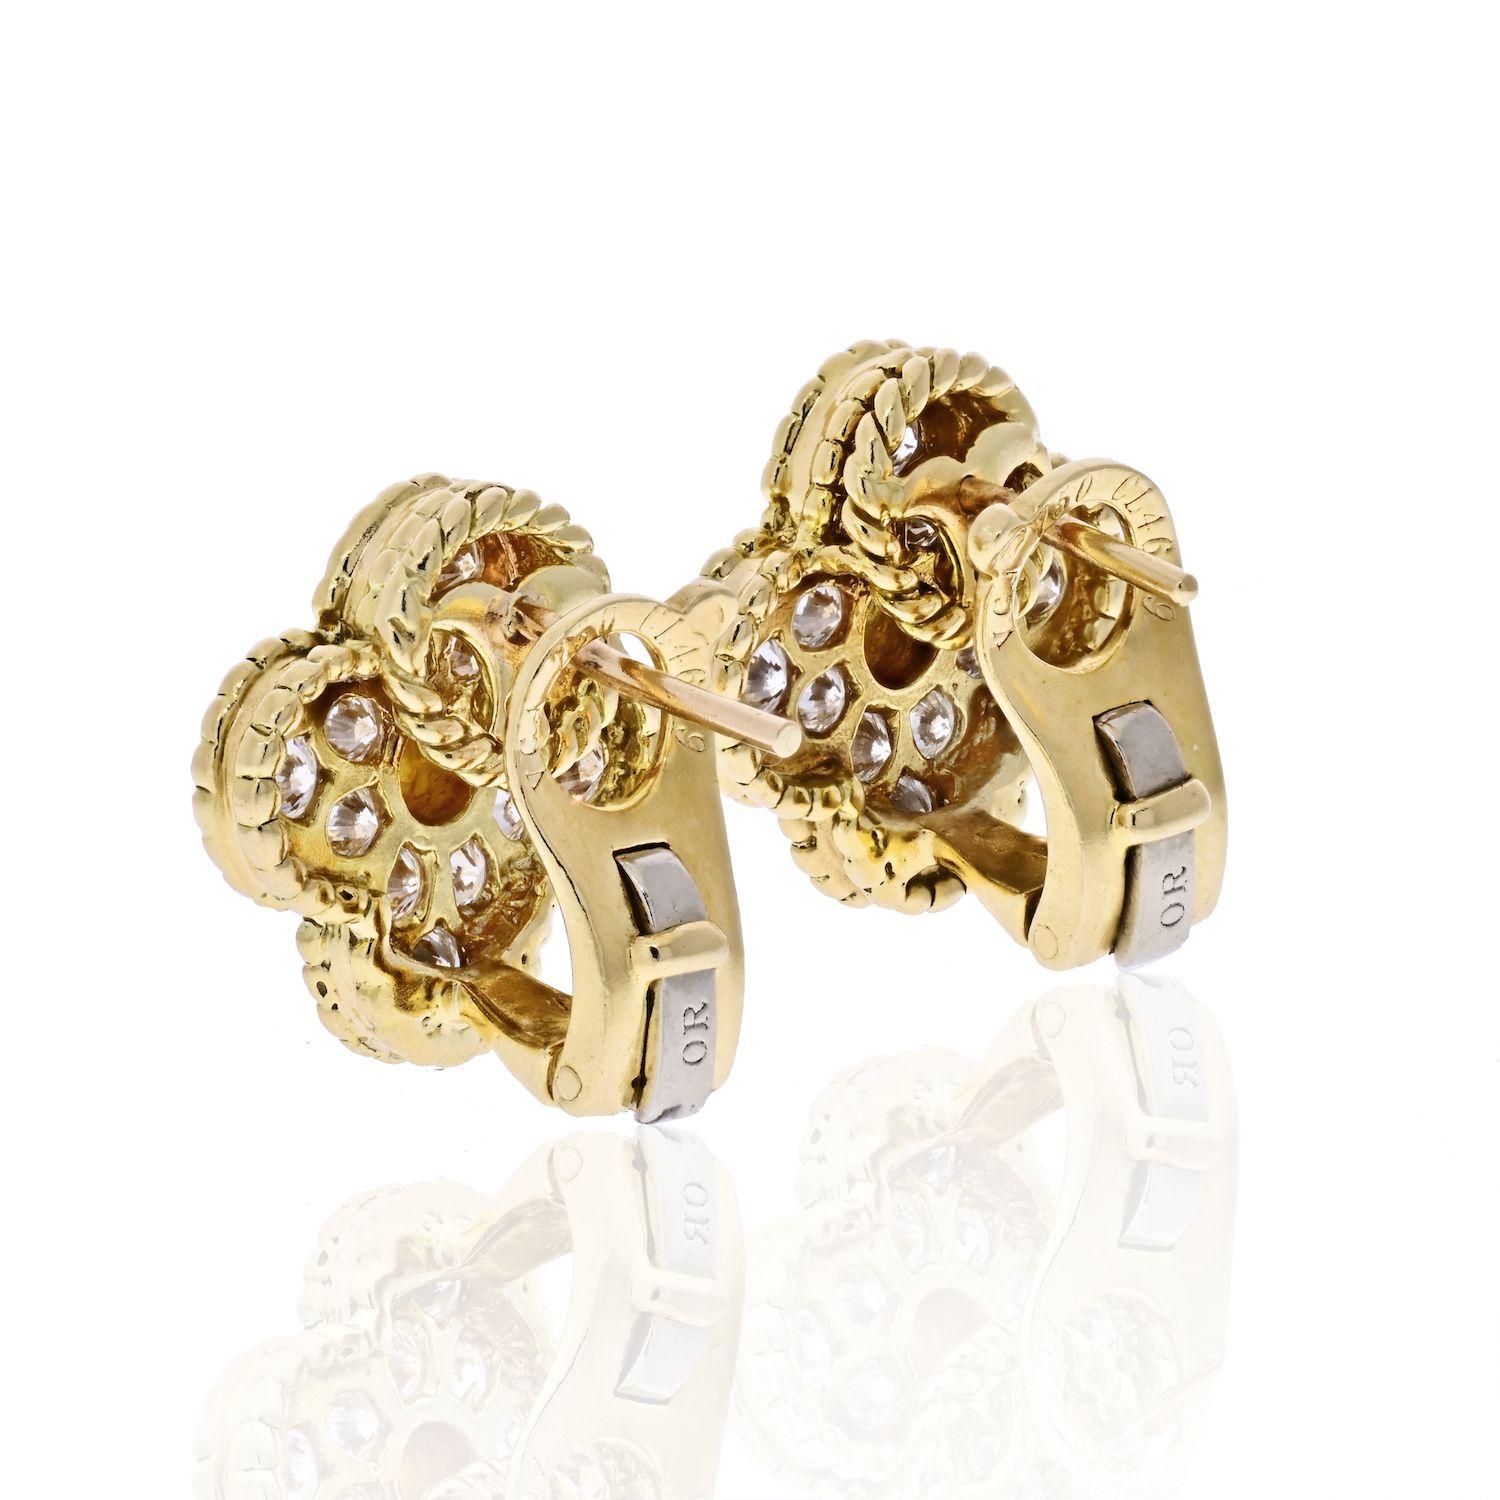 Modern Van Cleef & Arpels 18 Karat Yellow Gold Vintage Alhambra Diamond Earrings